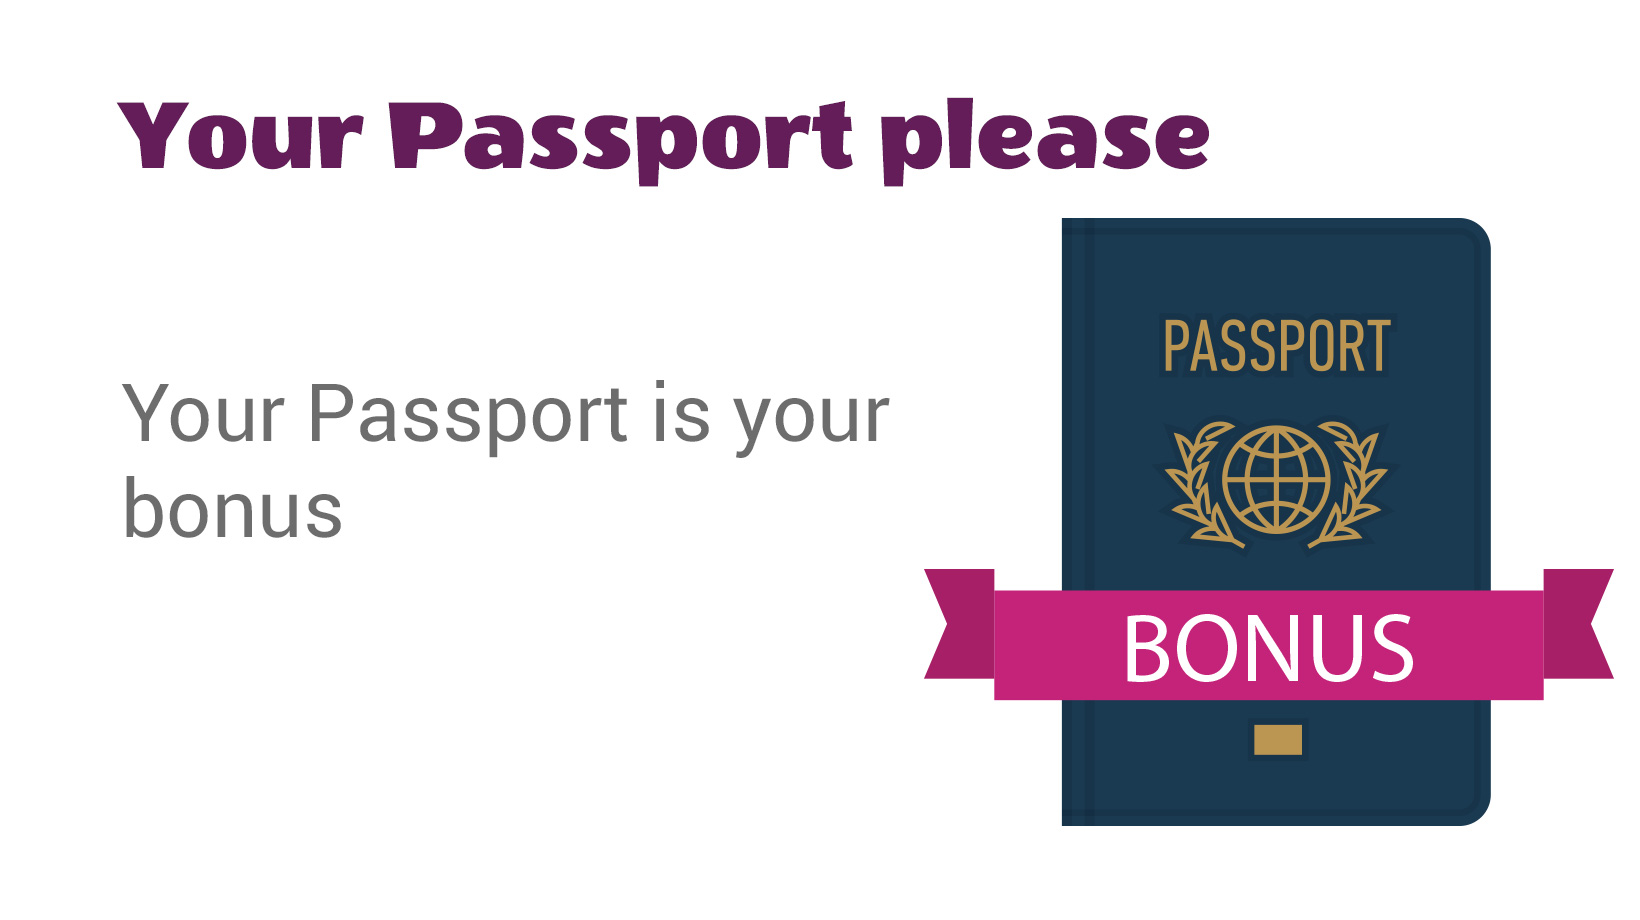 Your Passport is Your Bonus